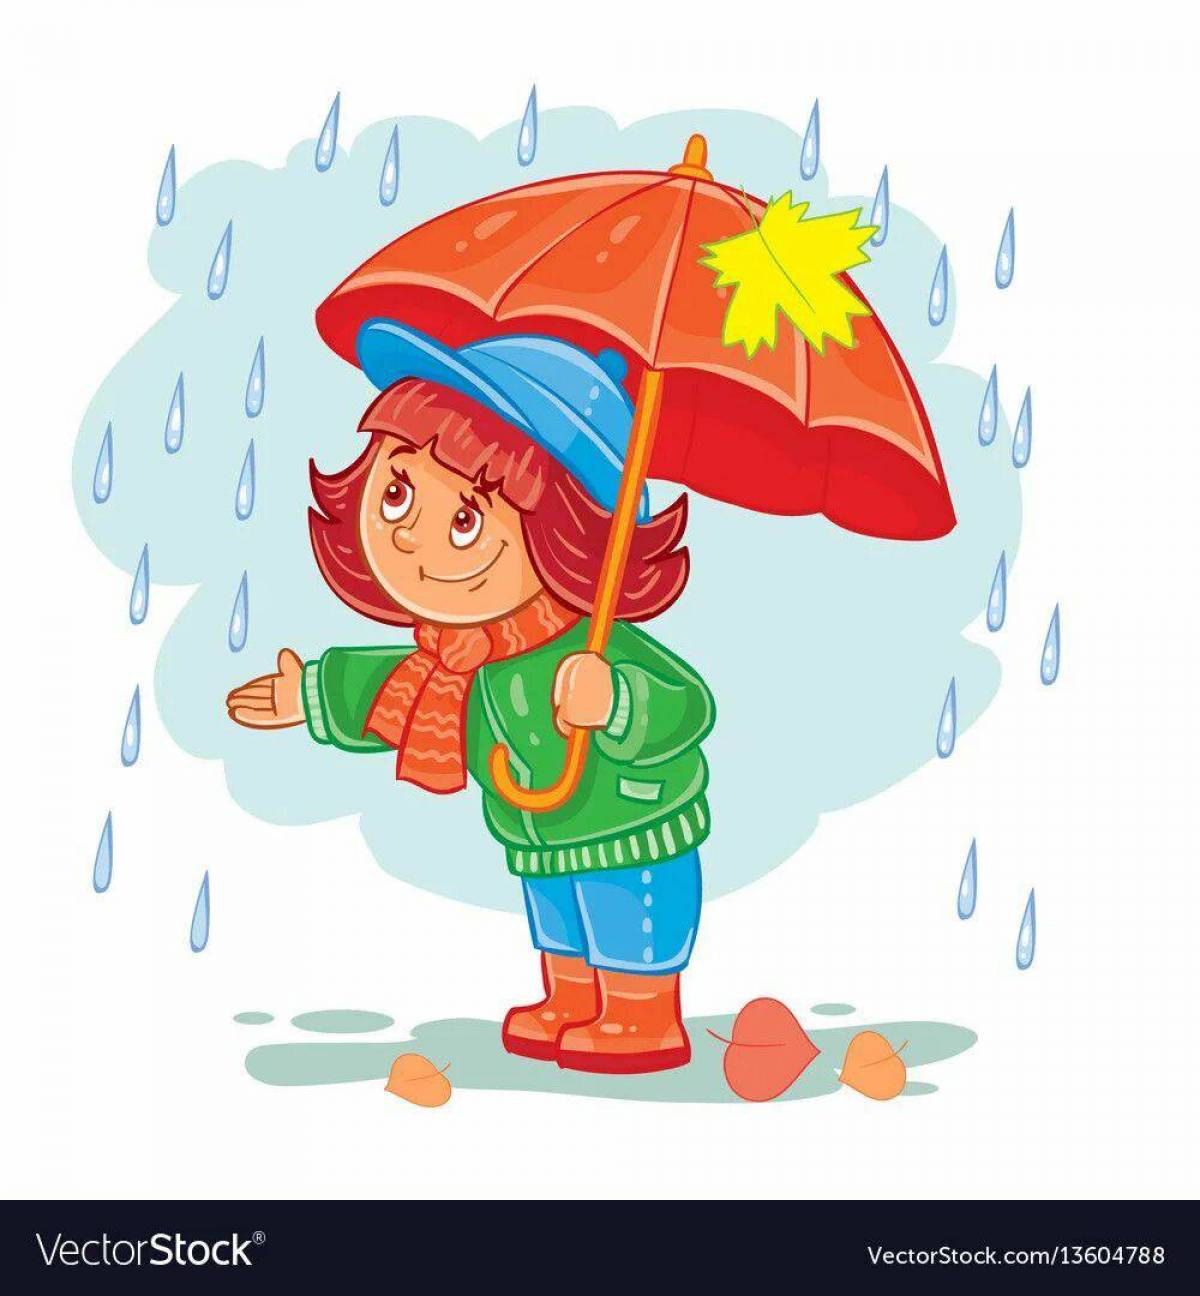 Дождь для детей #15